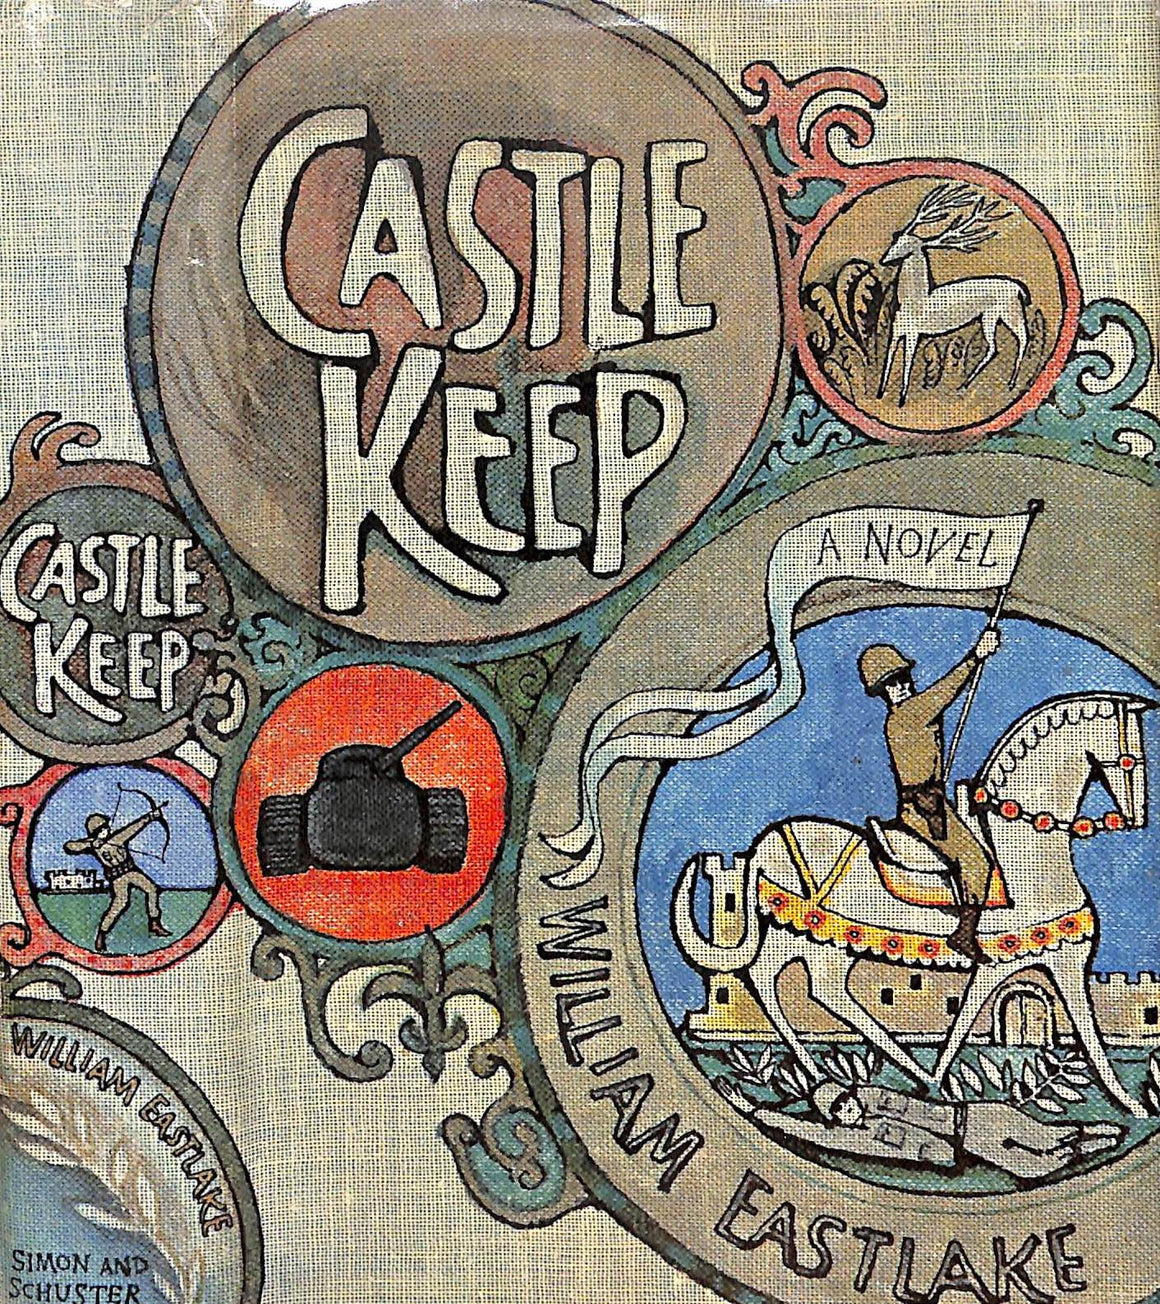 "Castle Keep" 1965 EASTLAKE, William